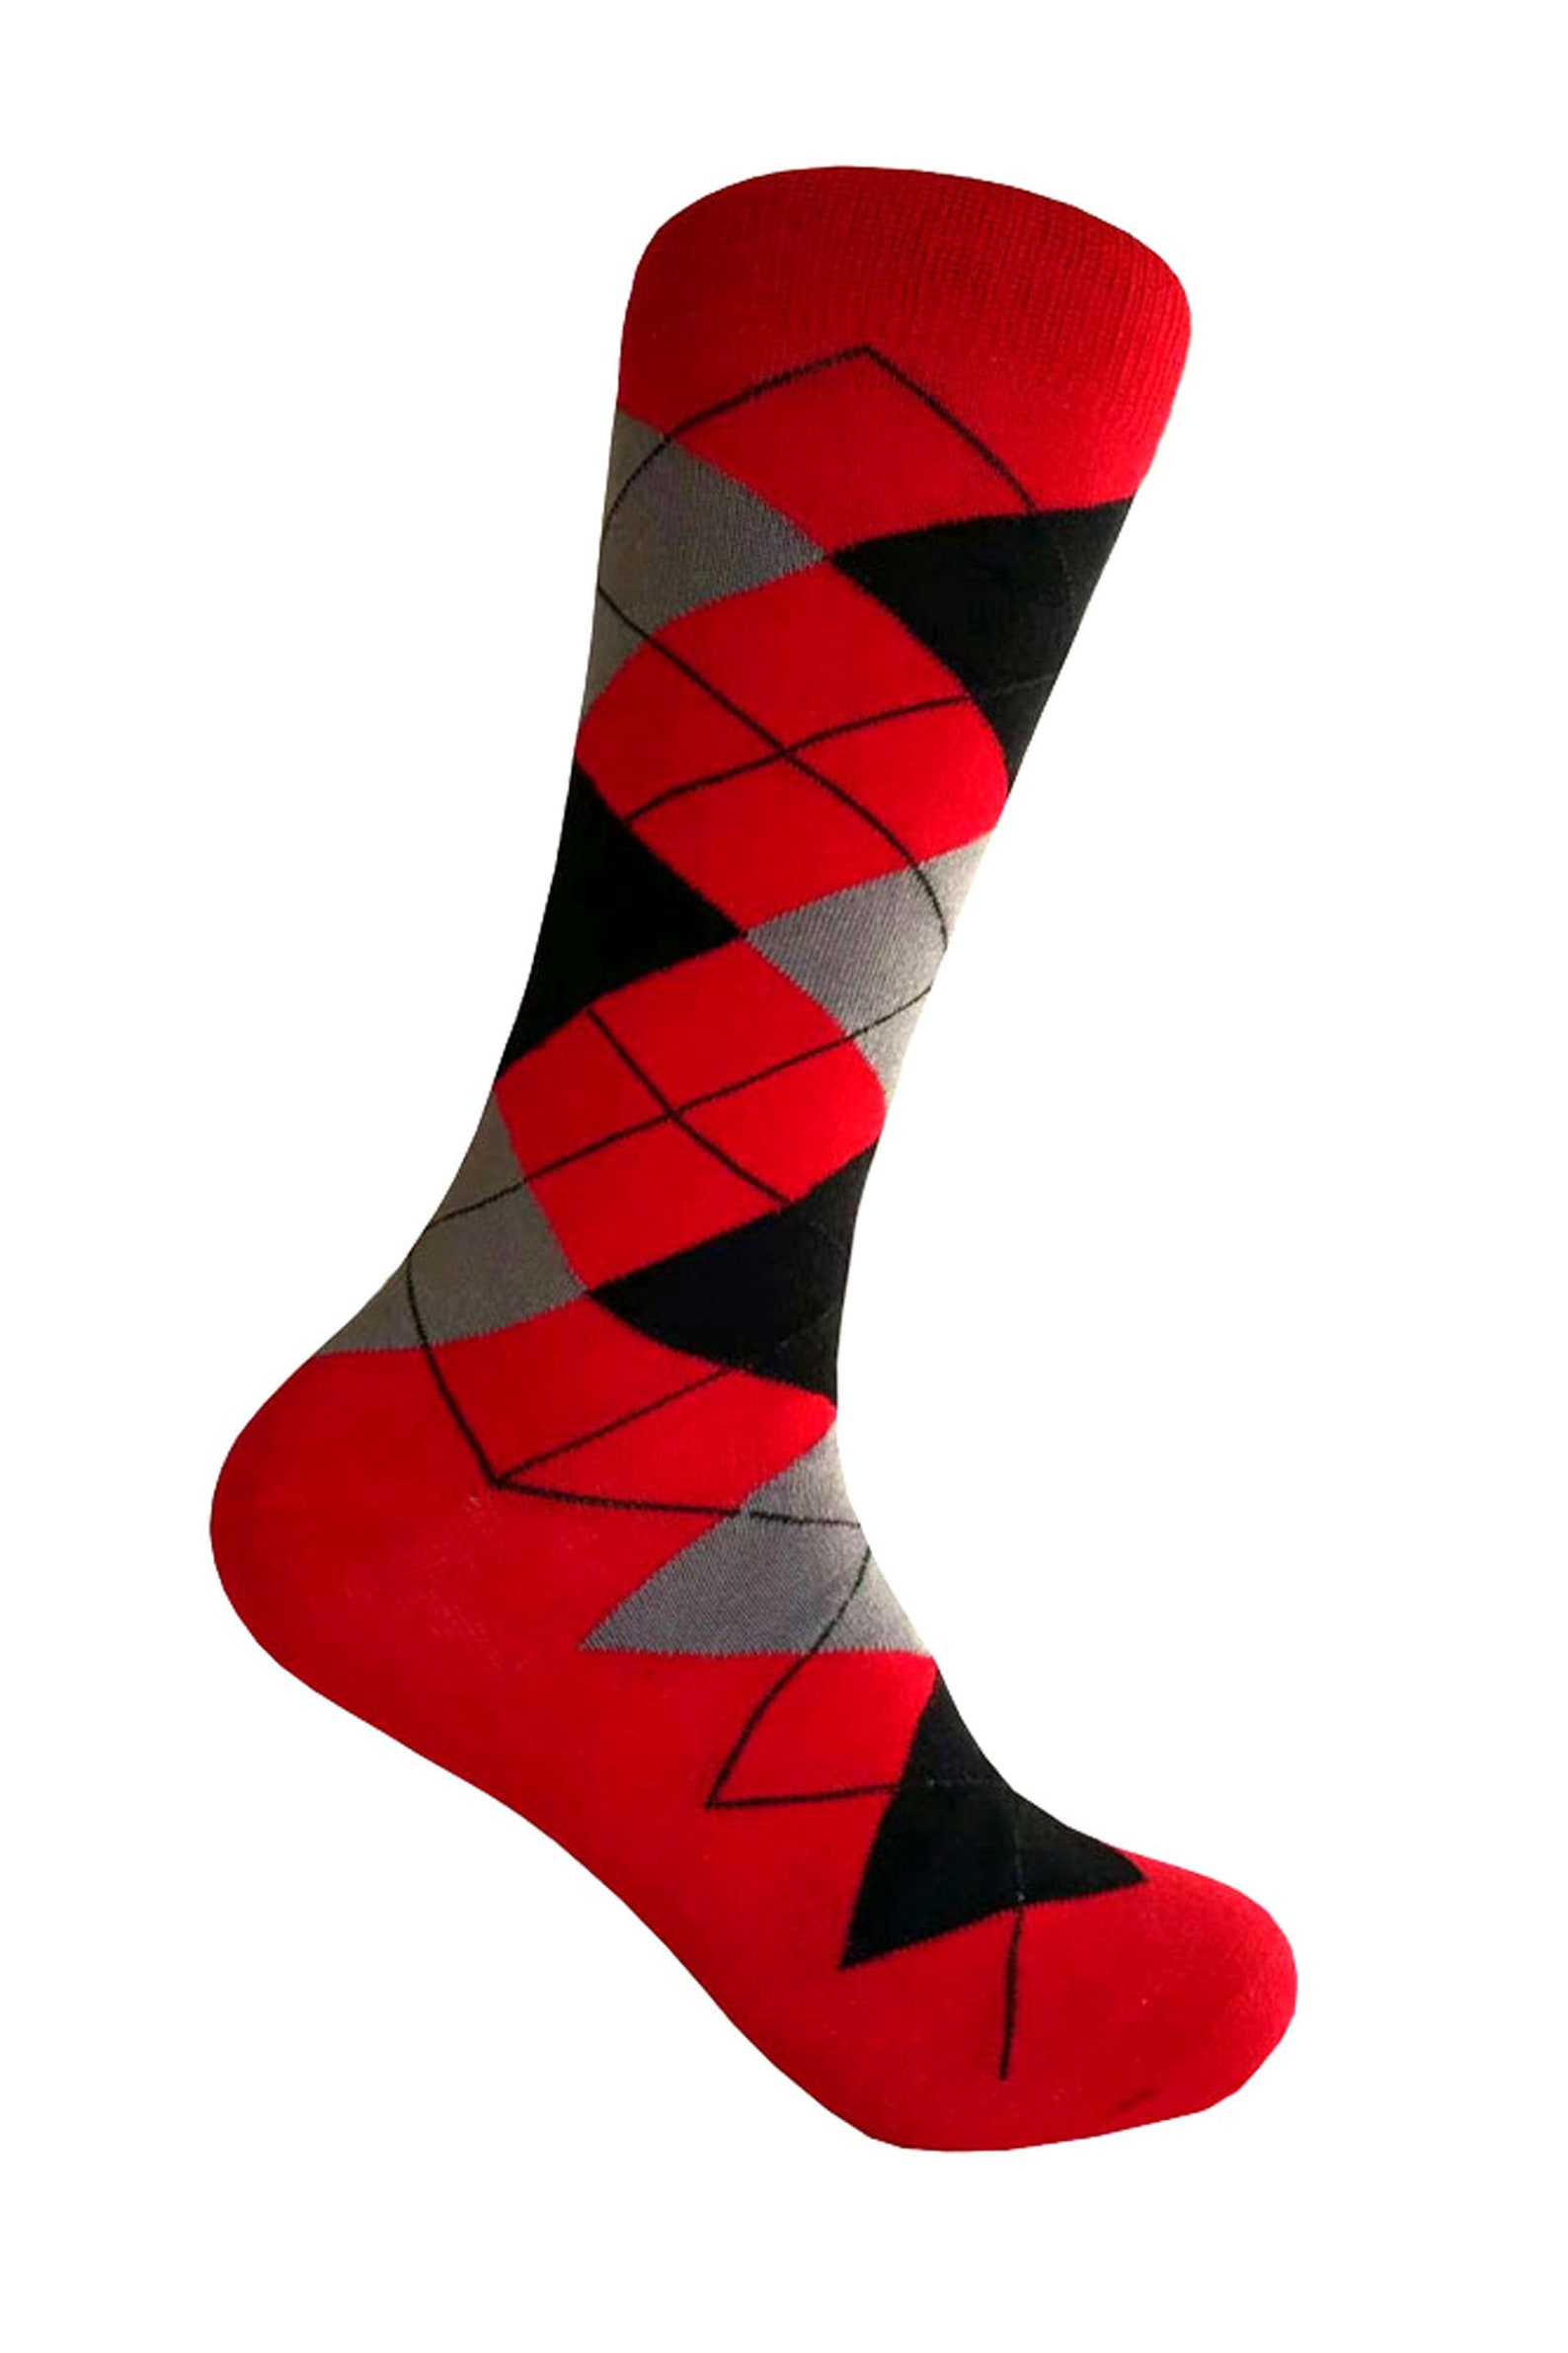 Men's Red/Black/ Heather Gray Argyle Dress Socks | Etsy